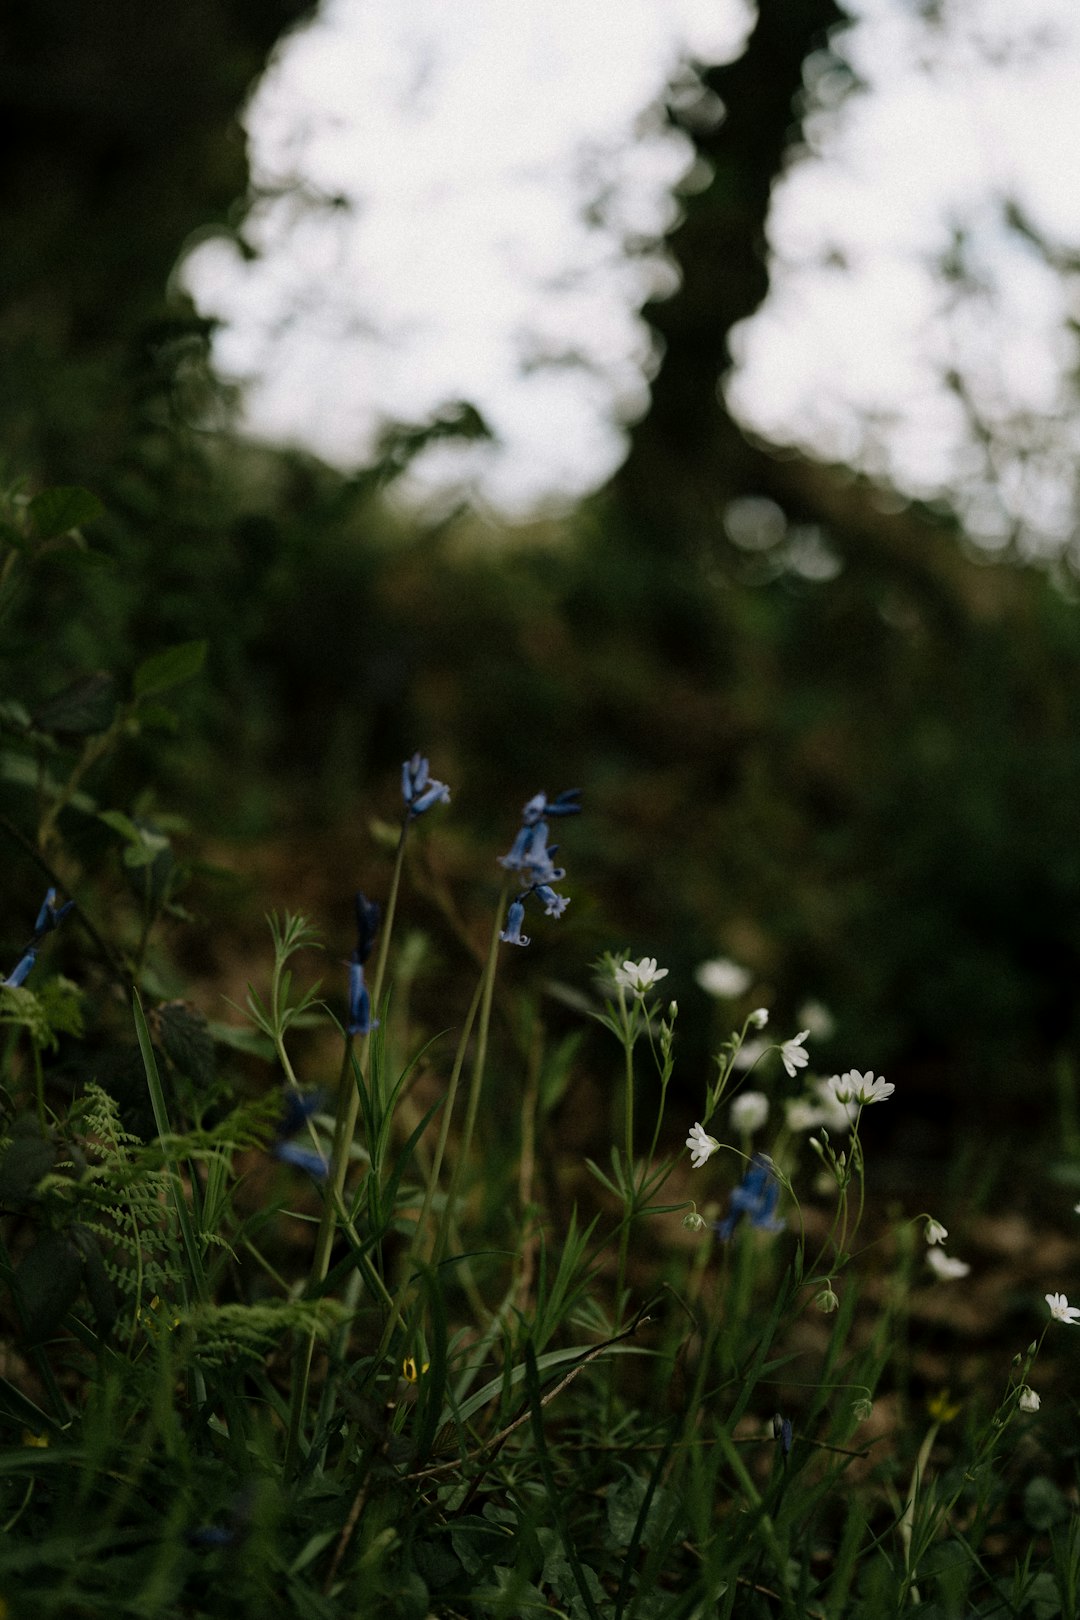 white and blue flowers in tilt shift lens